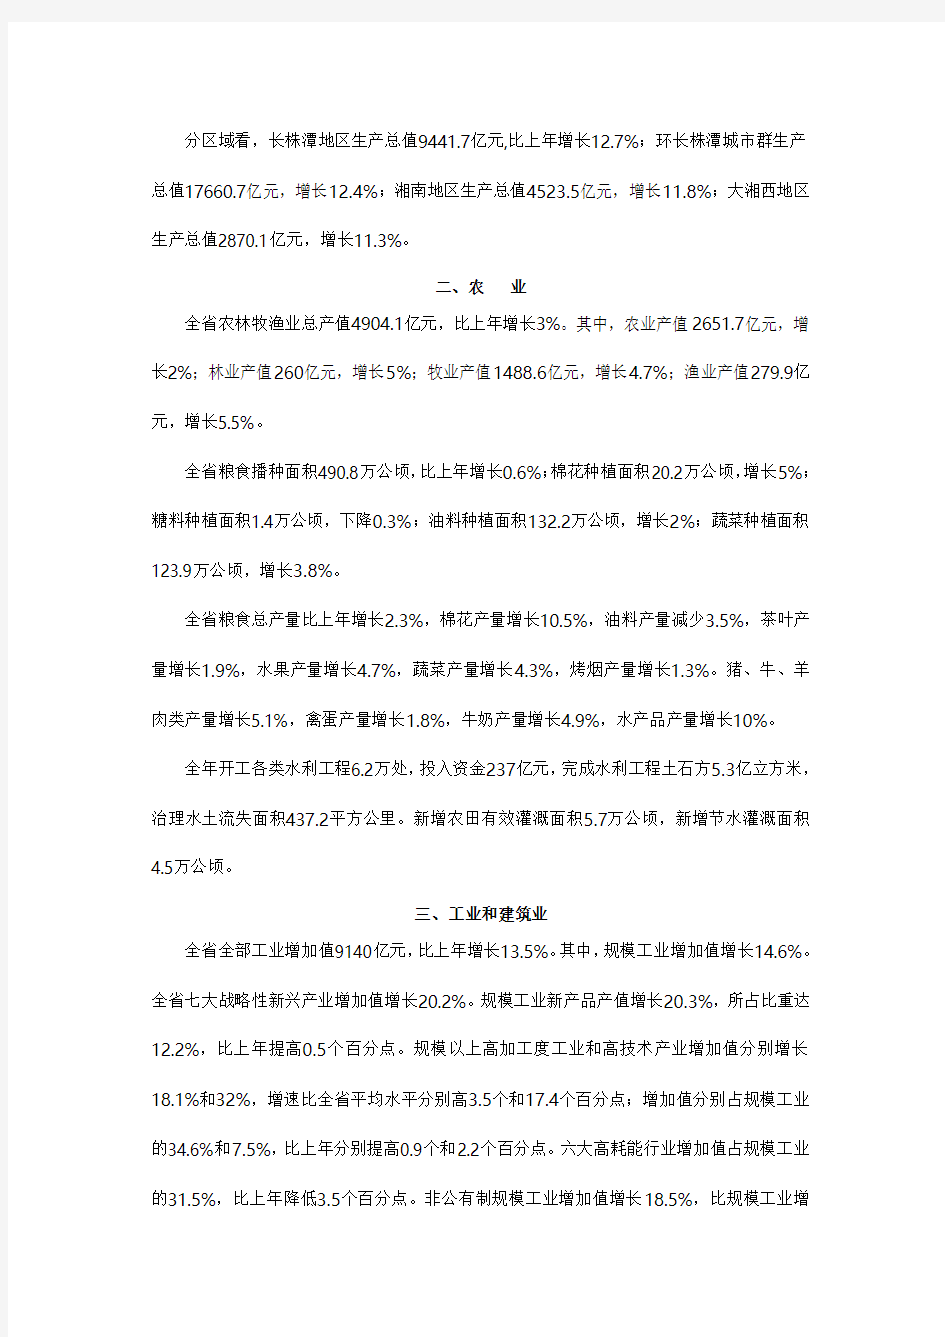 2012年湖南省国民经济统计公报